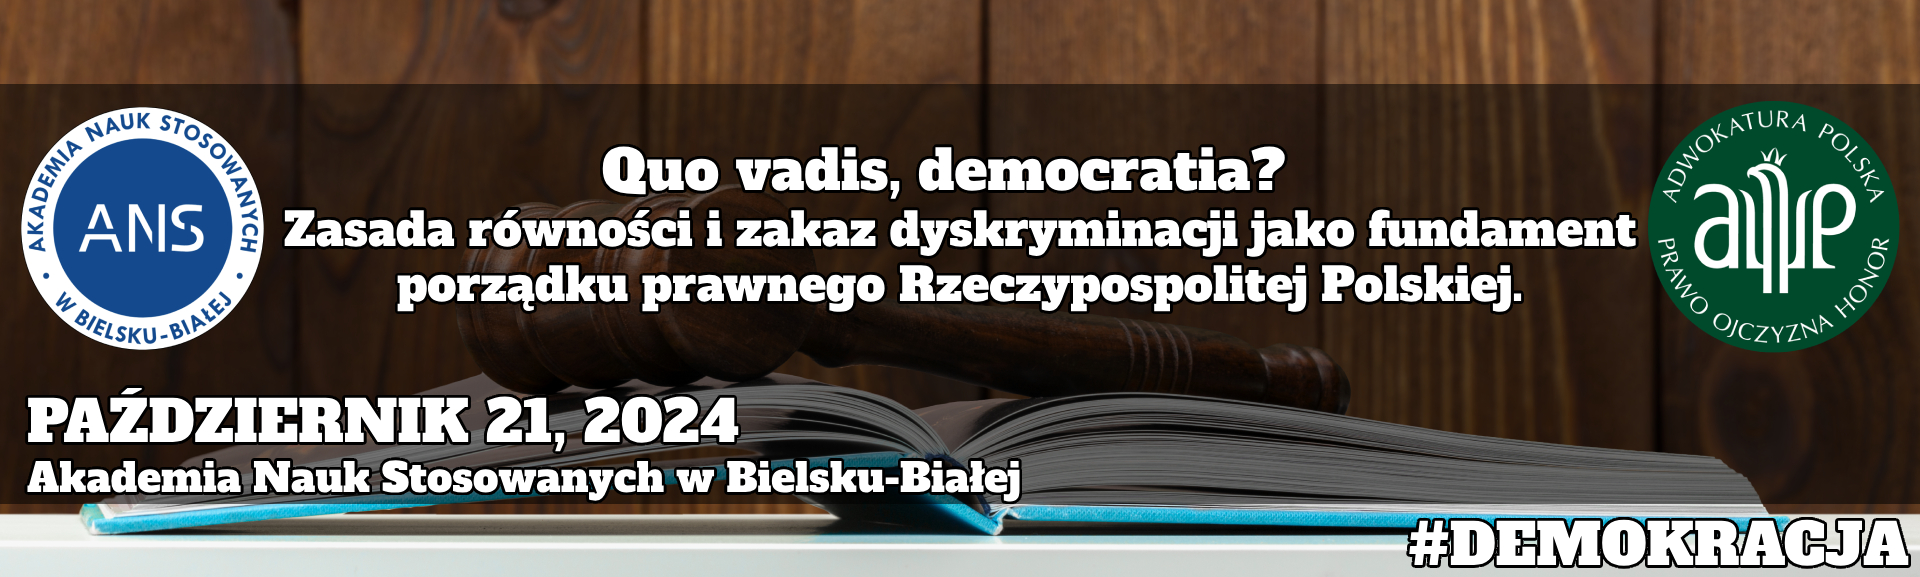 Quo vadis, democratia? Zasada równości i zakaz dyskryminacji jako fundament porządku prawnego Rzeczypospolitej Polskiej